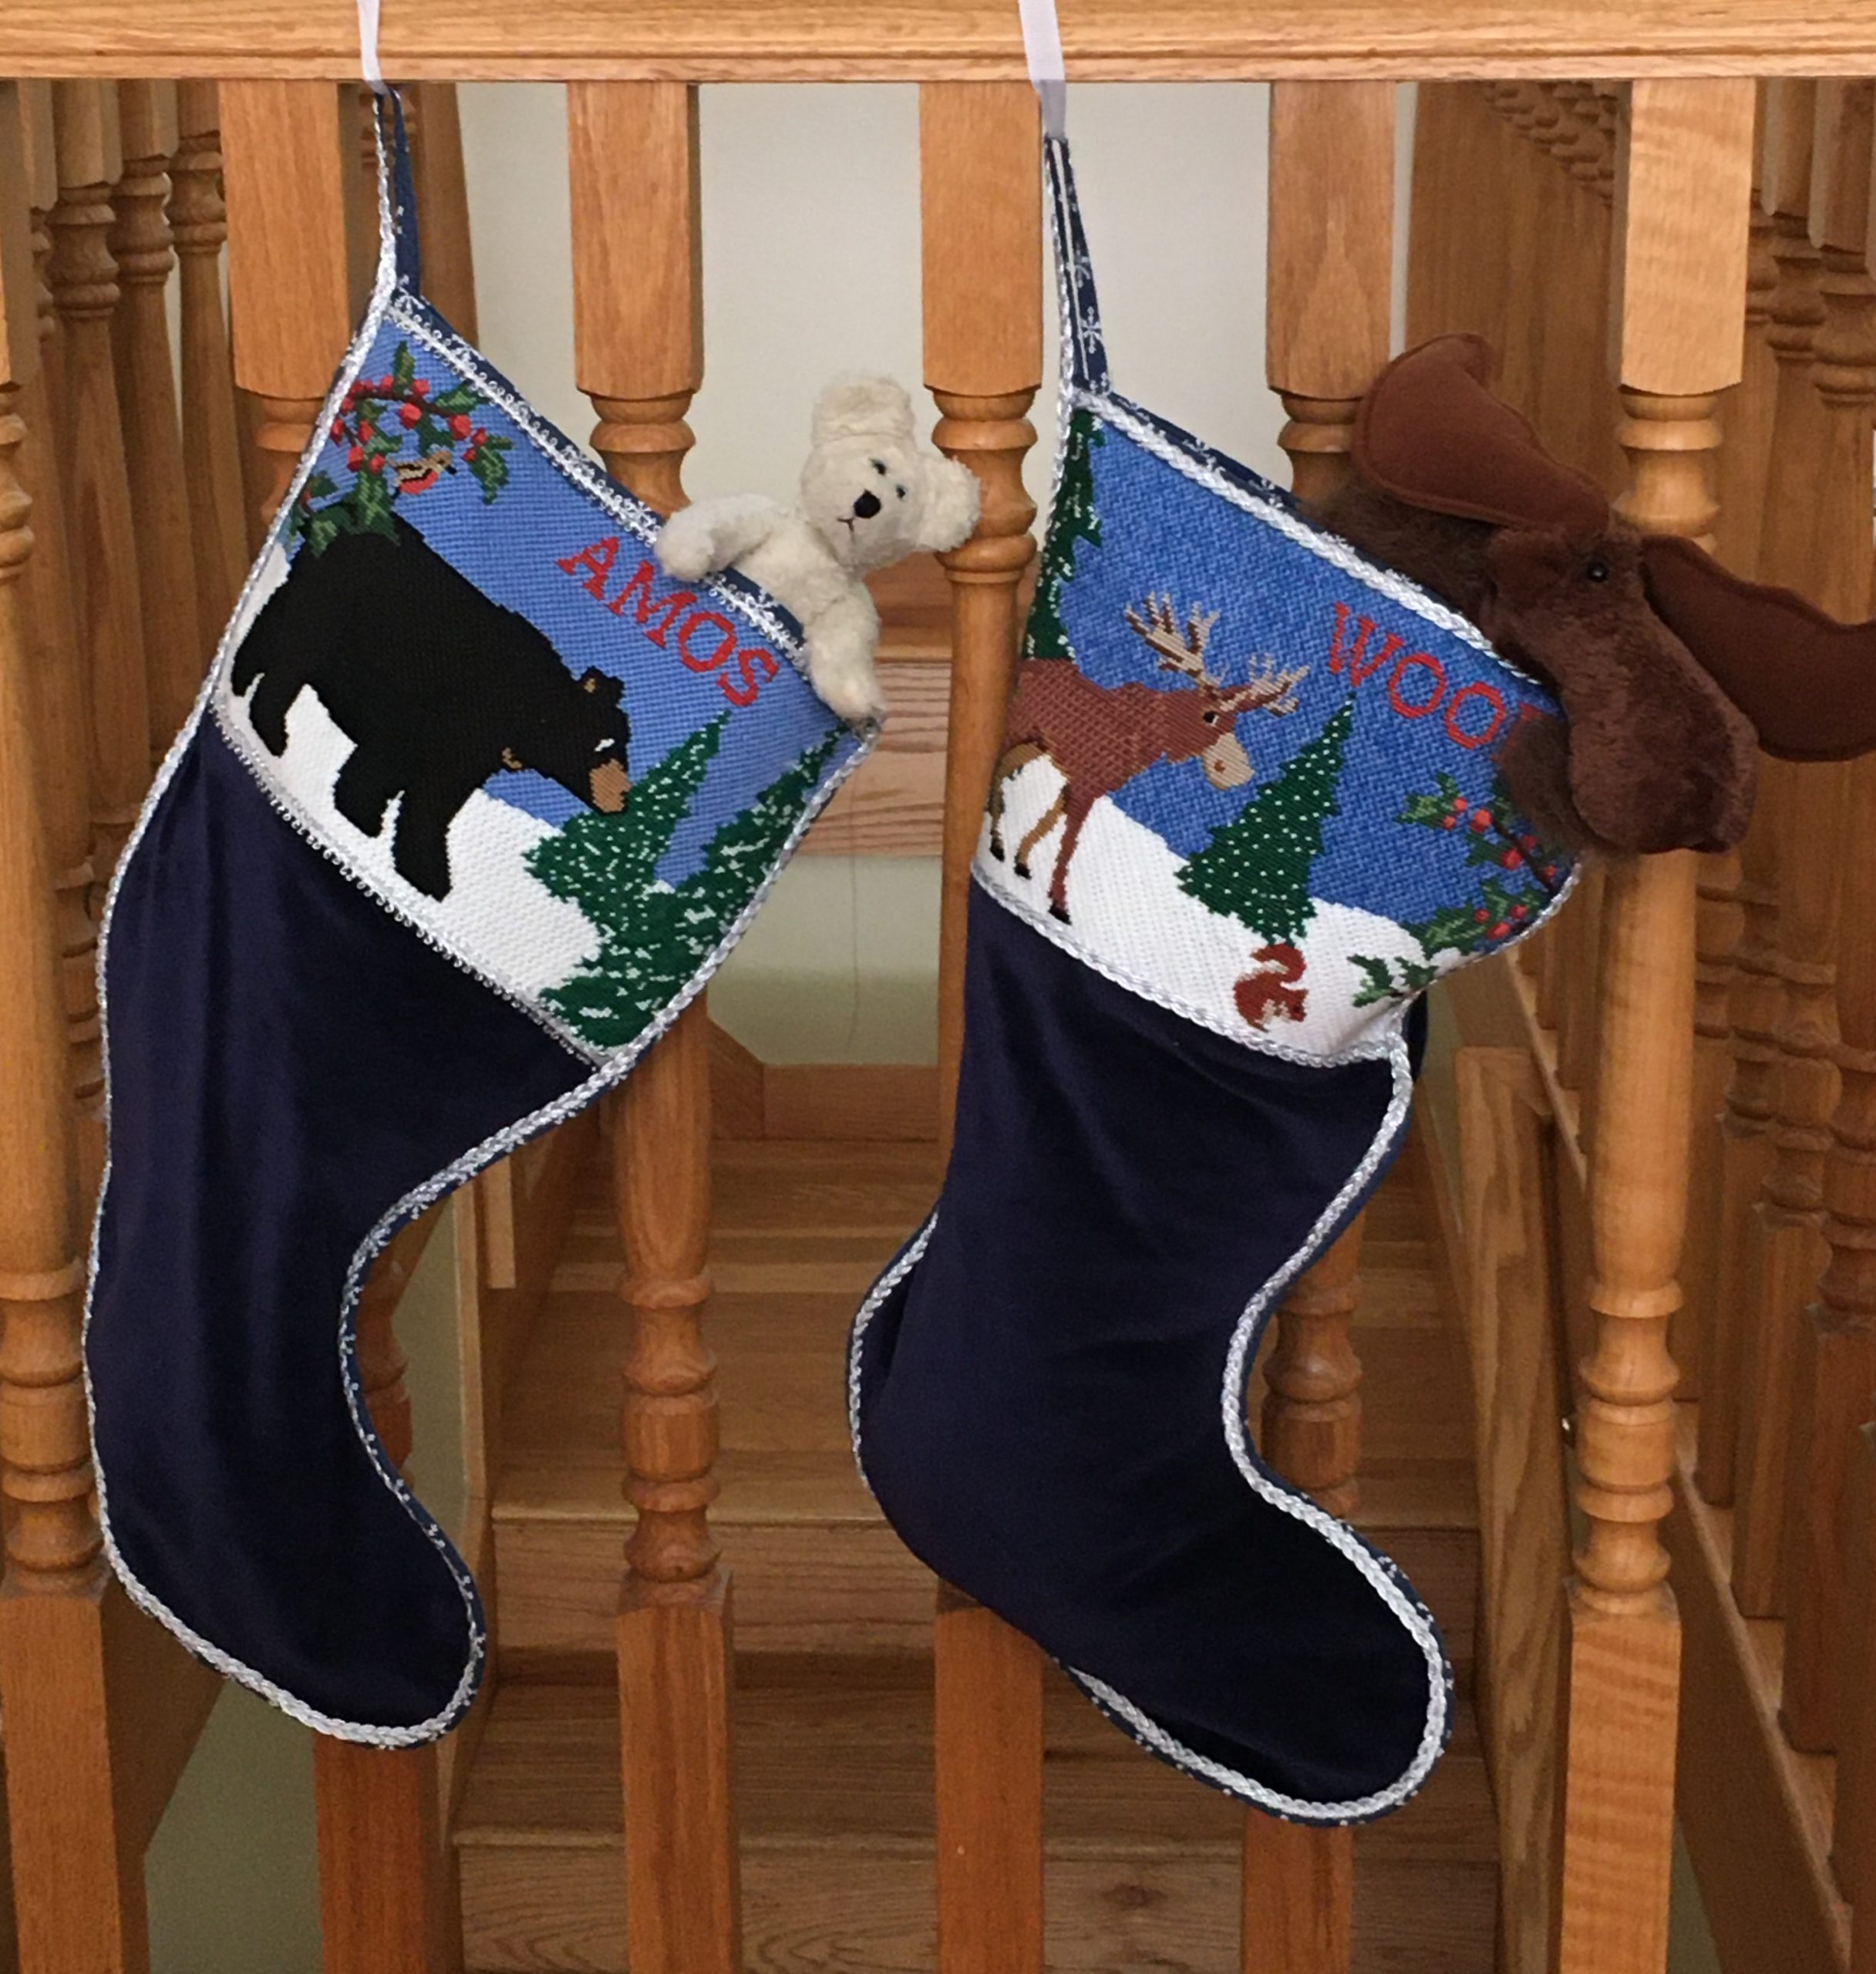 NeedlePaint's New Christmas Stocking Cuffs! - NeedlePoint Kits and